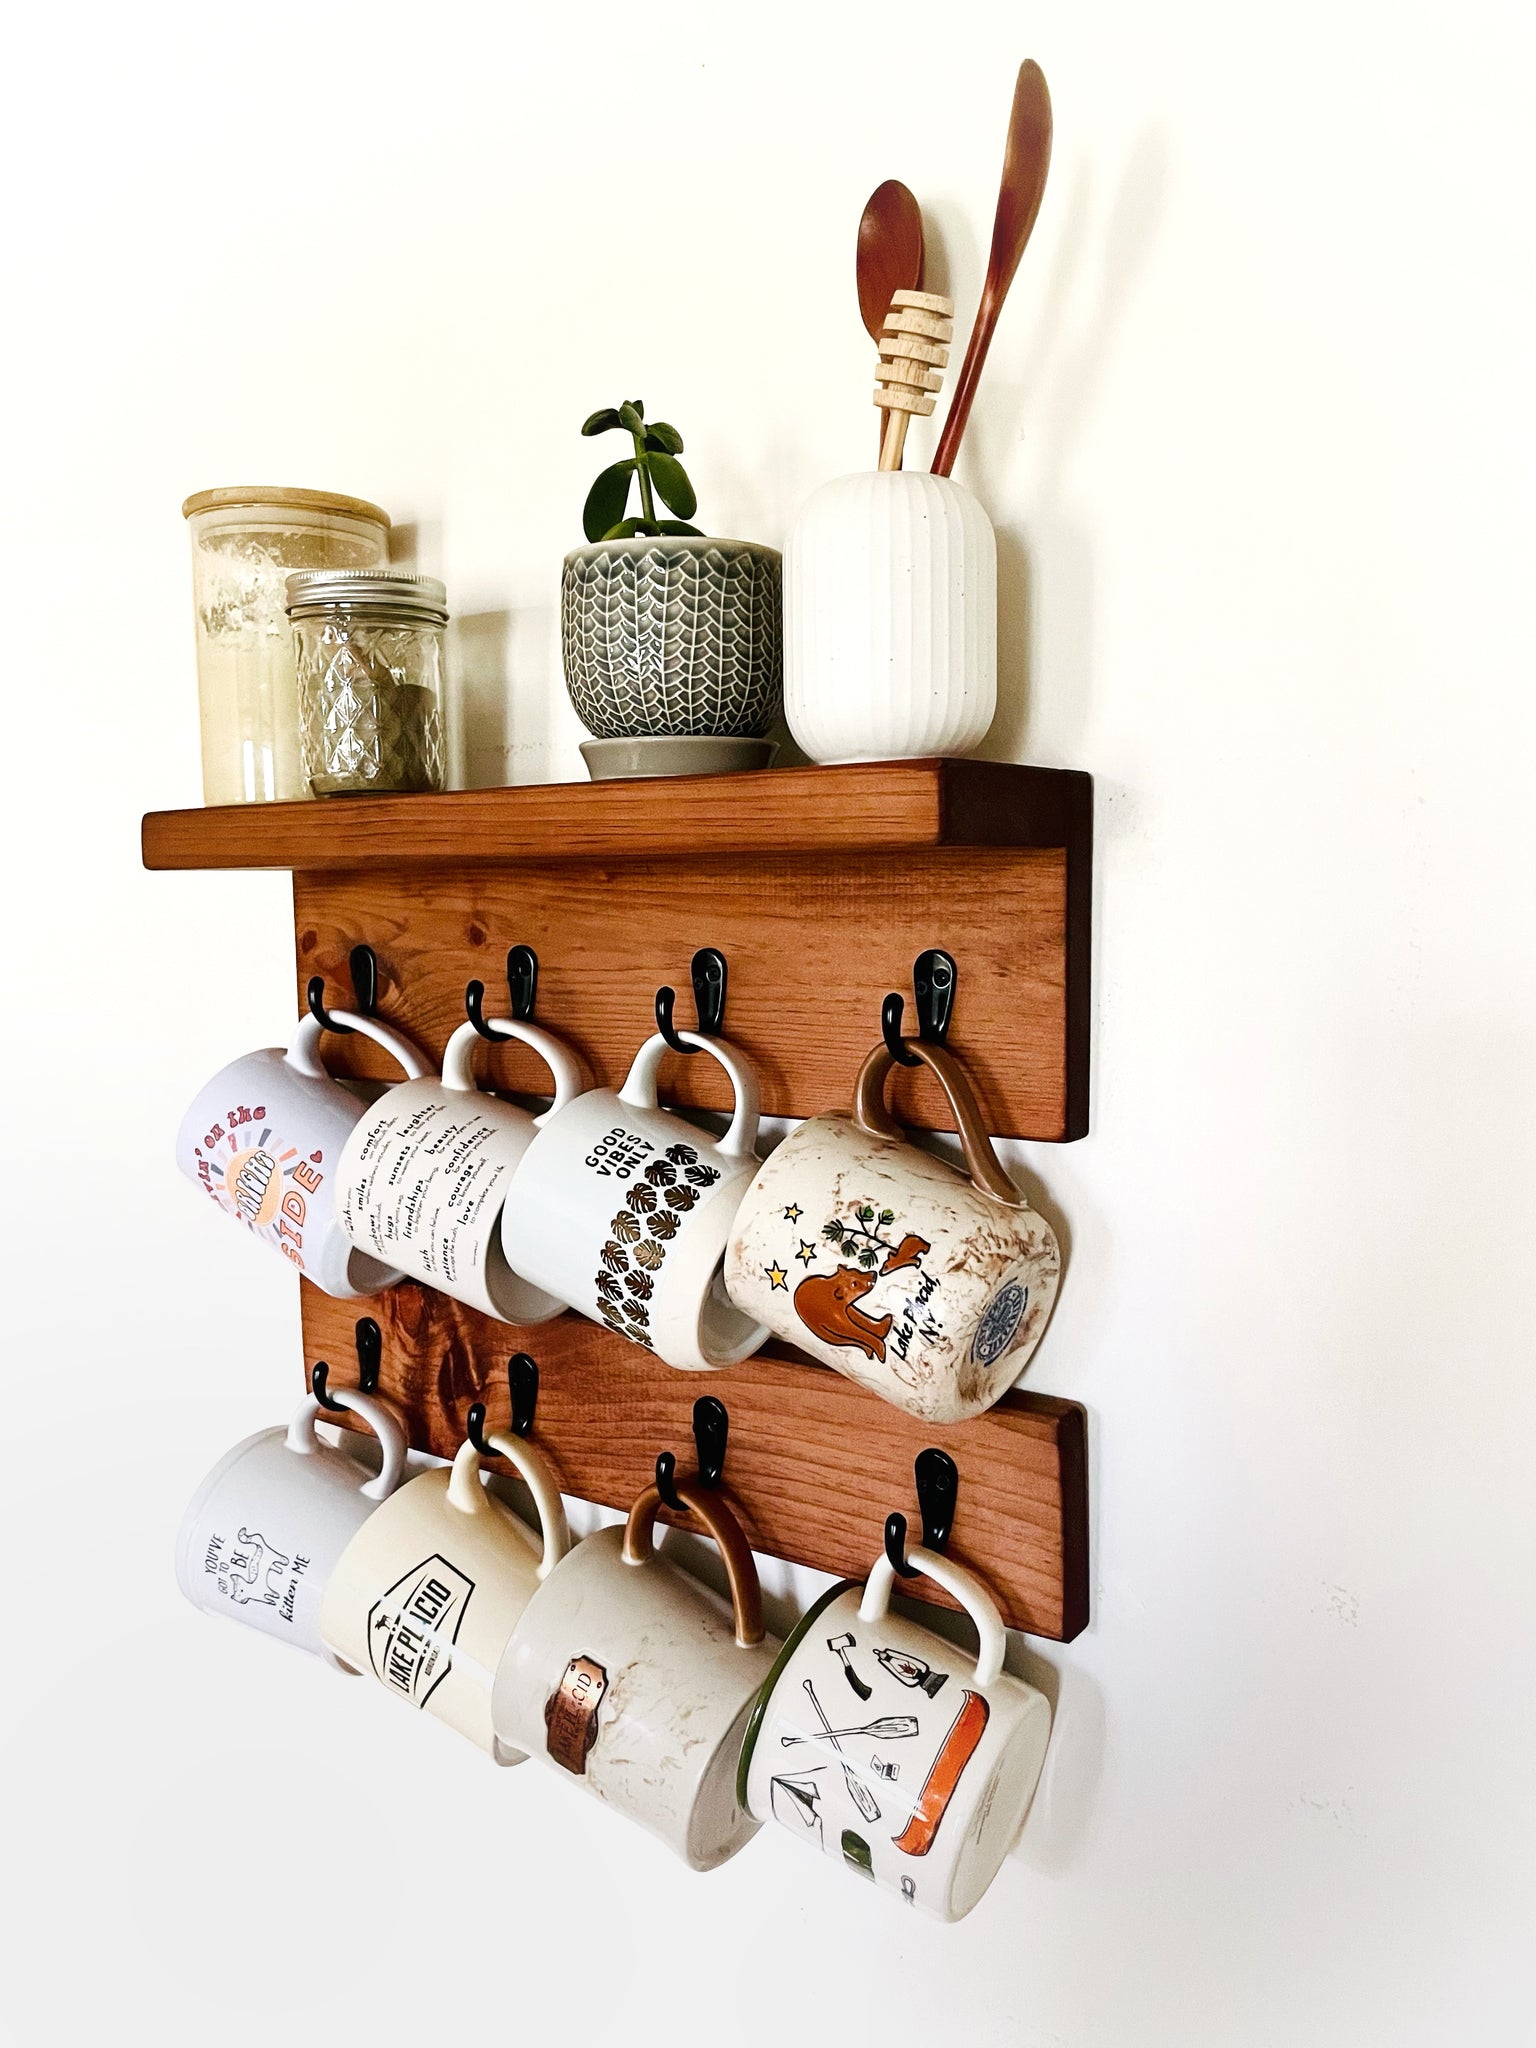 How To Make A DIY Wall-Mounted Coffee Mug Display Rack